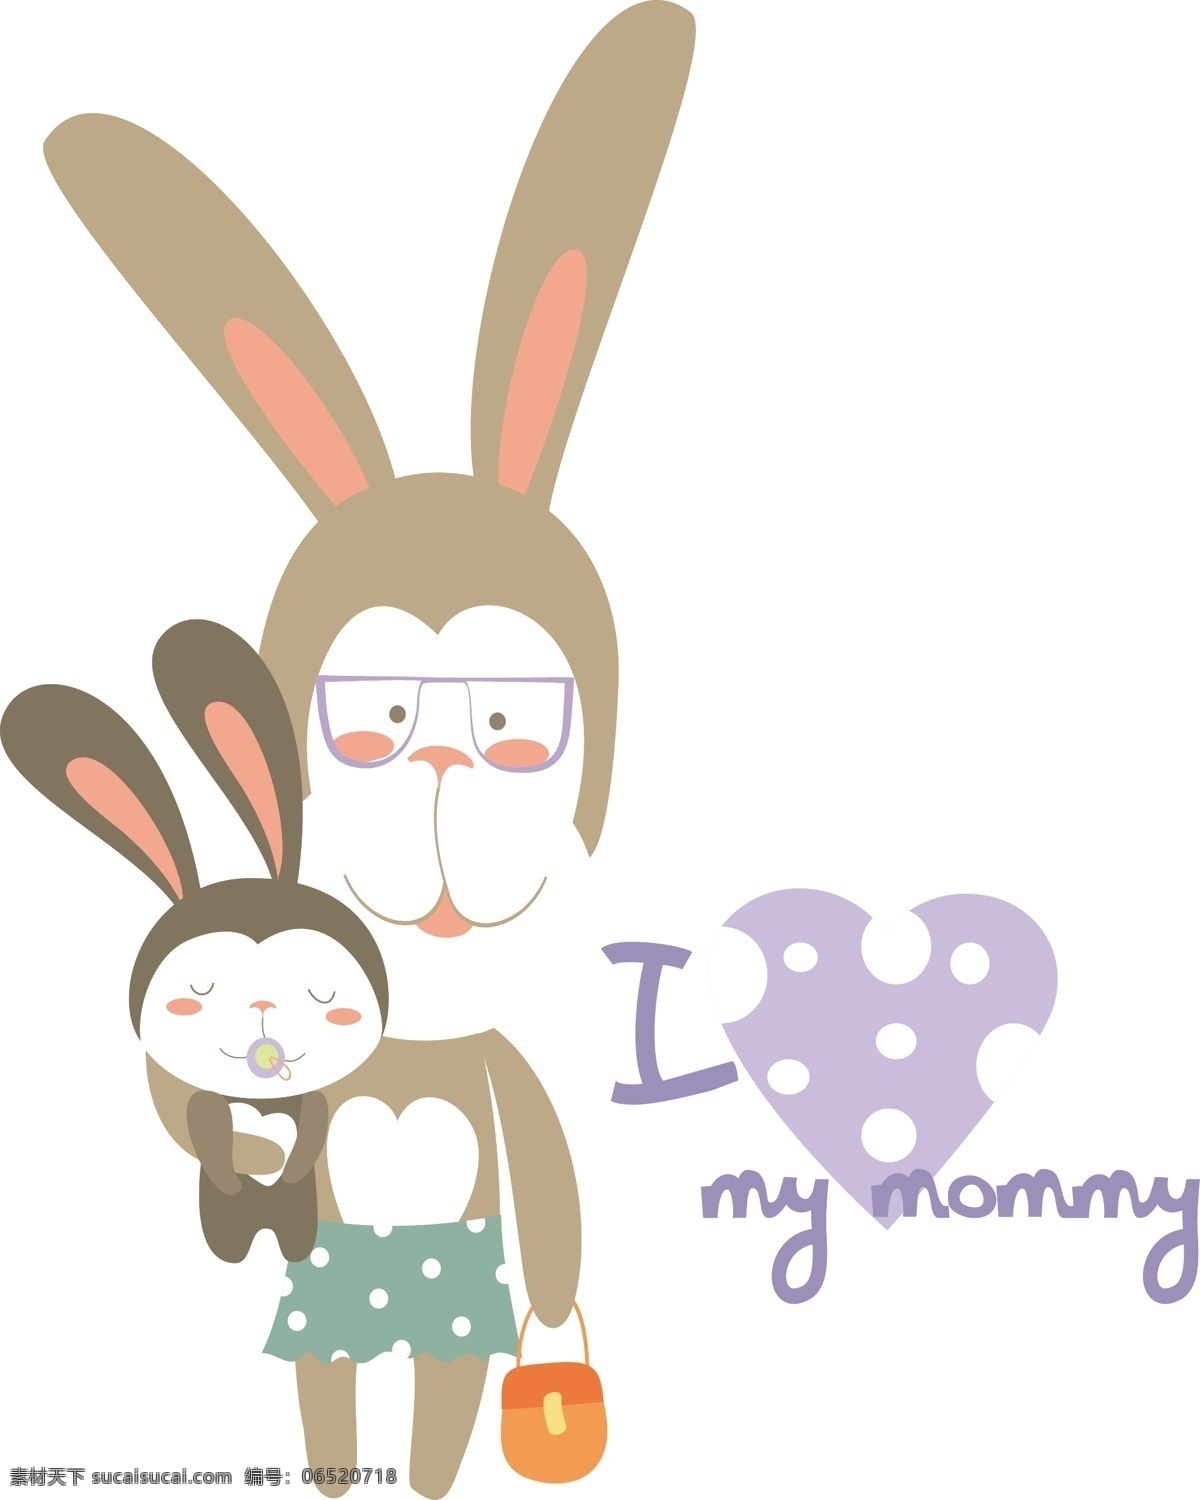 可爱兔子插画 兔子 小动物 小兔子 英文文字 卡通插画